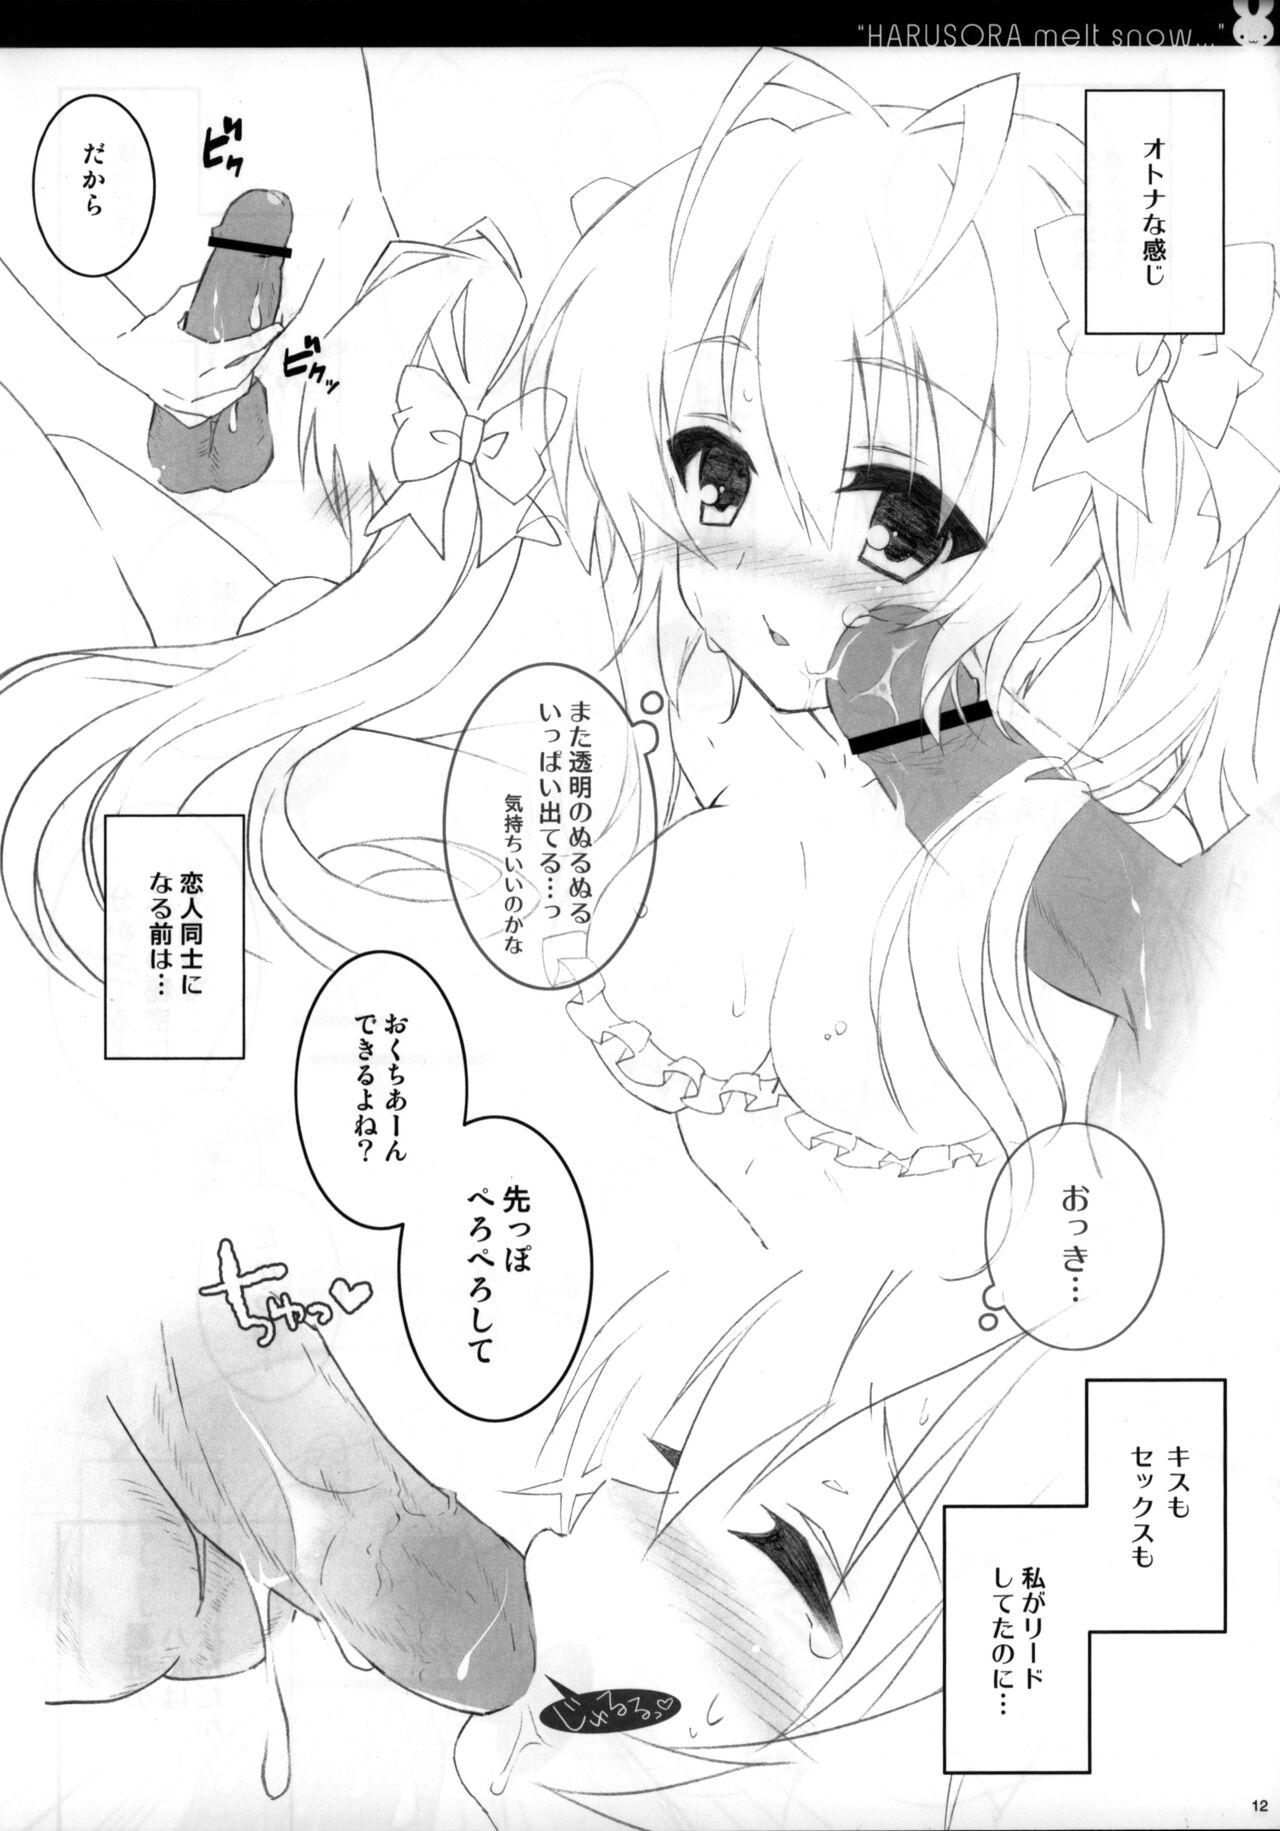 Farting Sora ori snowin'! - Yosuga no sora Butthole - Page 10